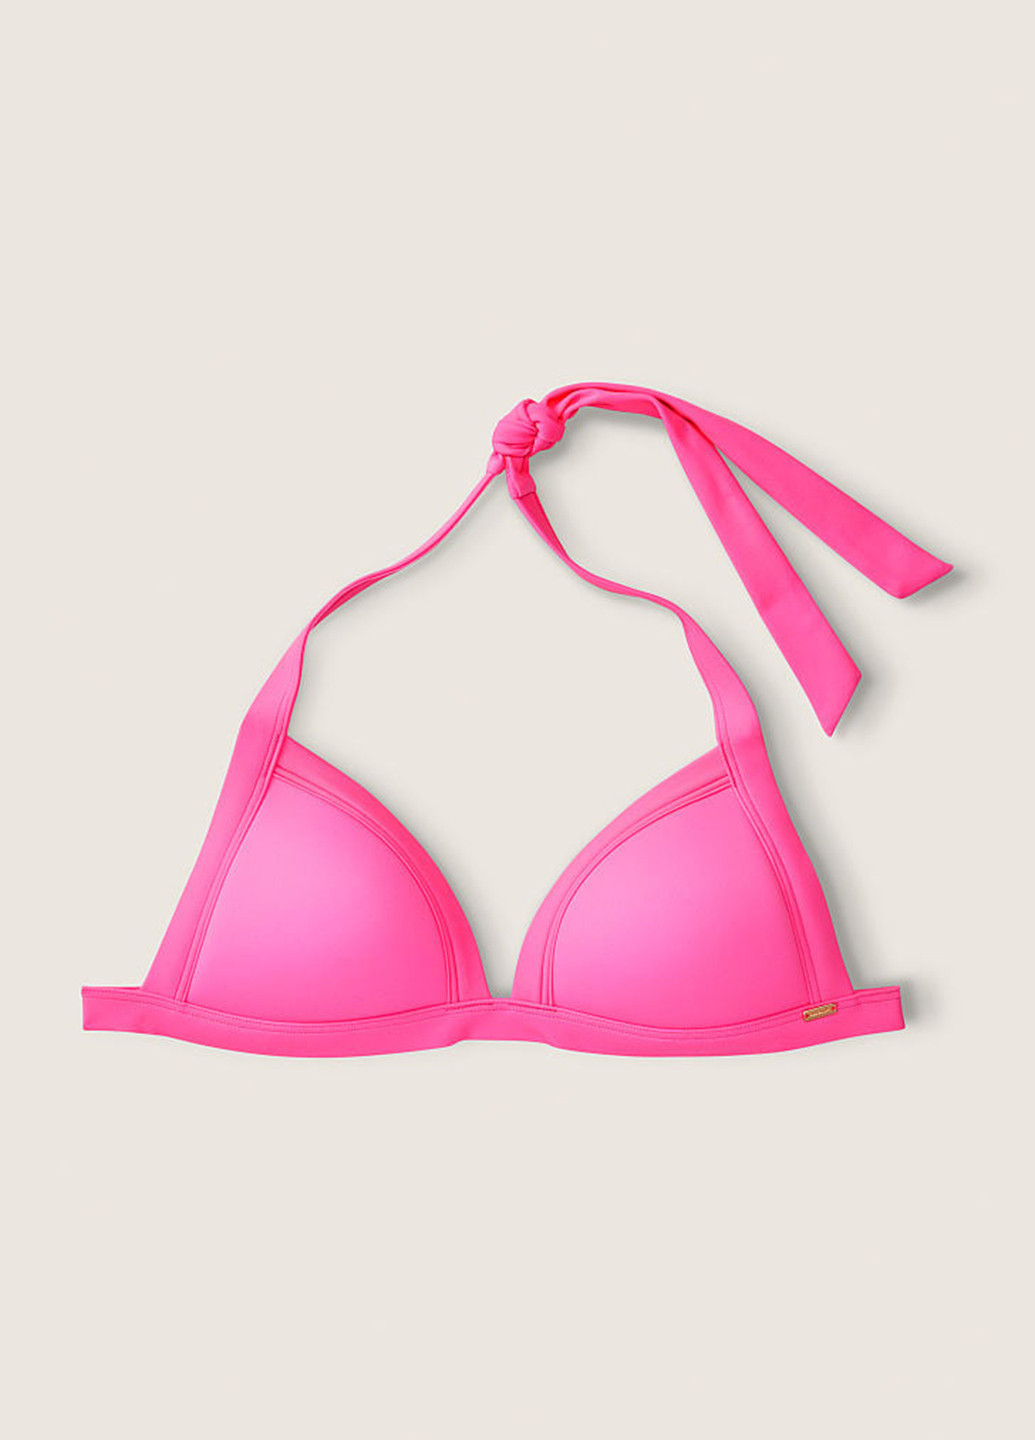 Рожевий літній купальник (купальний ліф, трусики) бікіні, роздільний Victoria's Secret